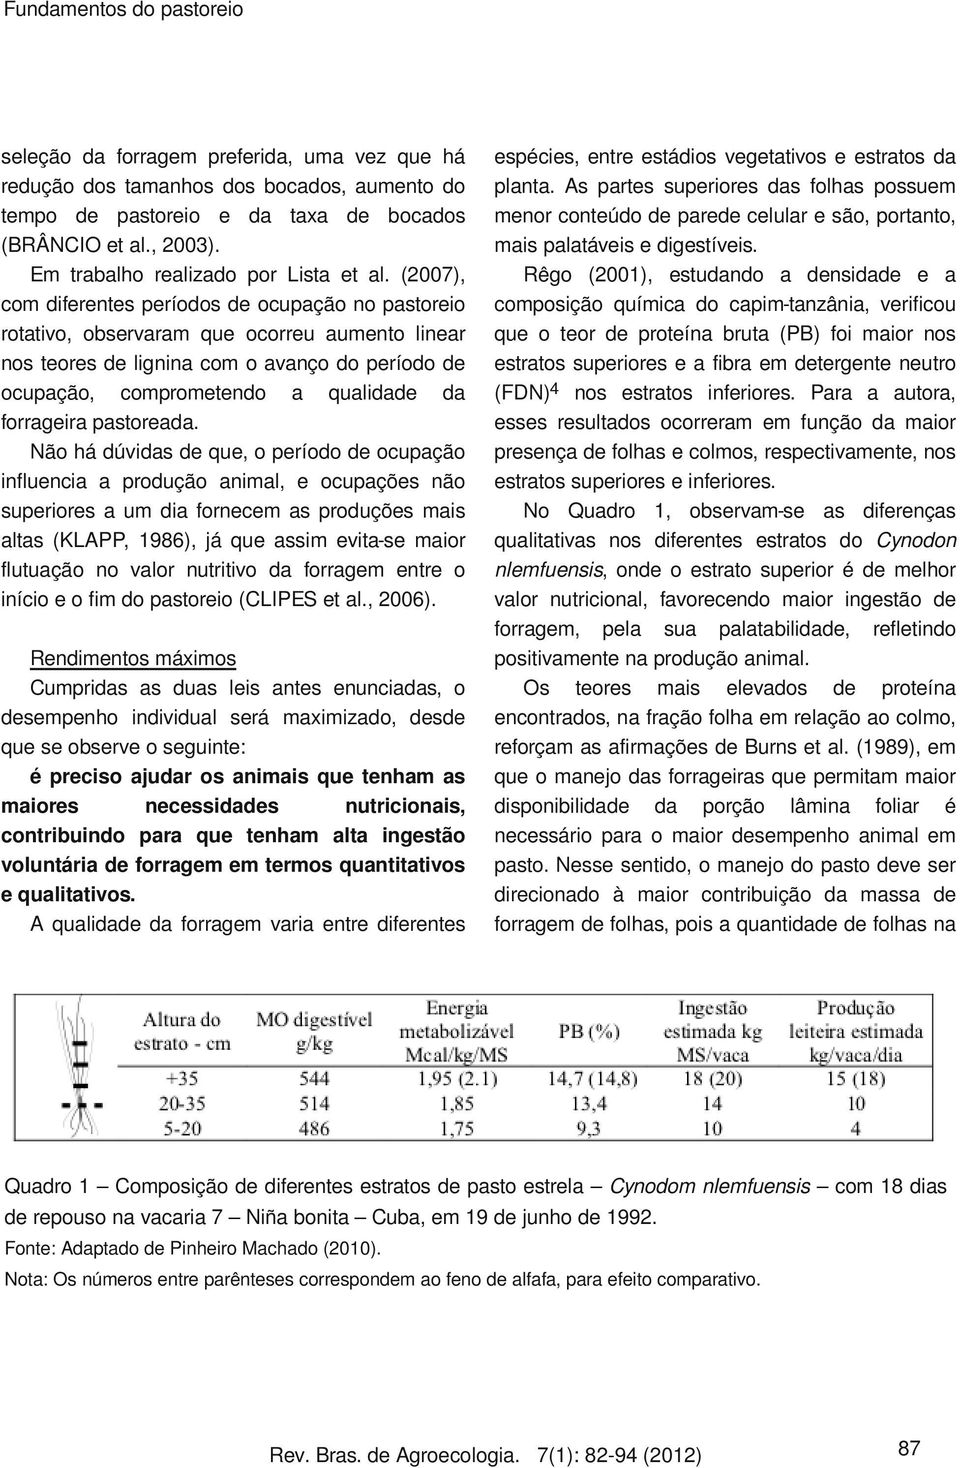 (2007), com diferentes períodos de ocupação no pastoreio rotativo, observaram que ocorreu aumento linear nos teores de lignina com o avanço do período de ocupação, comprometendo a qualidade da